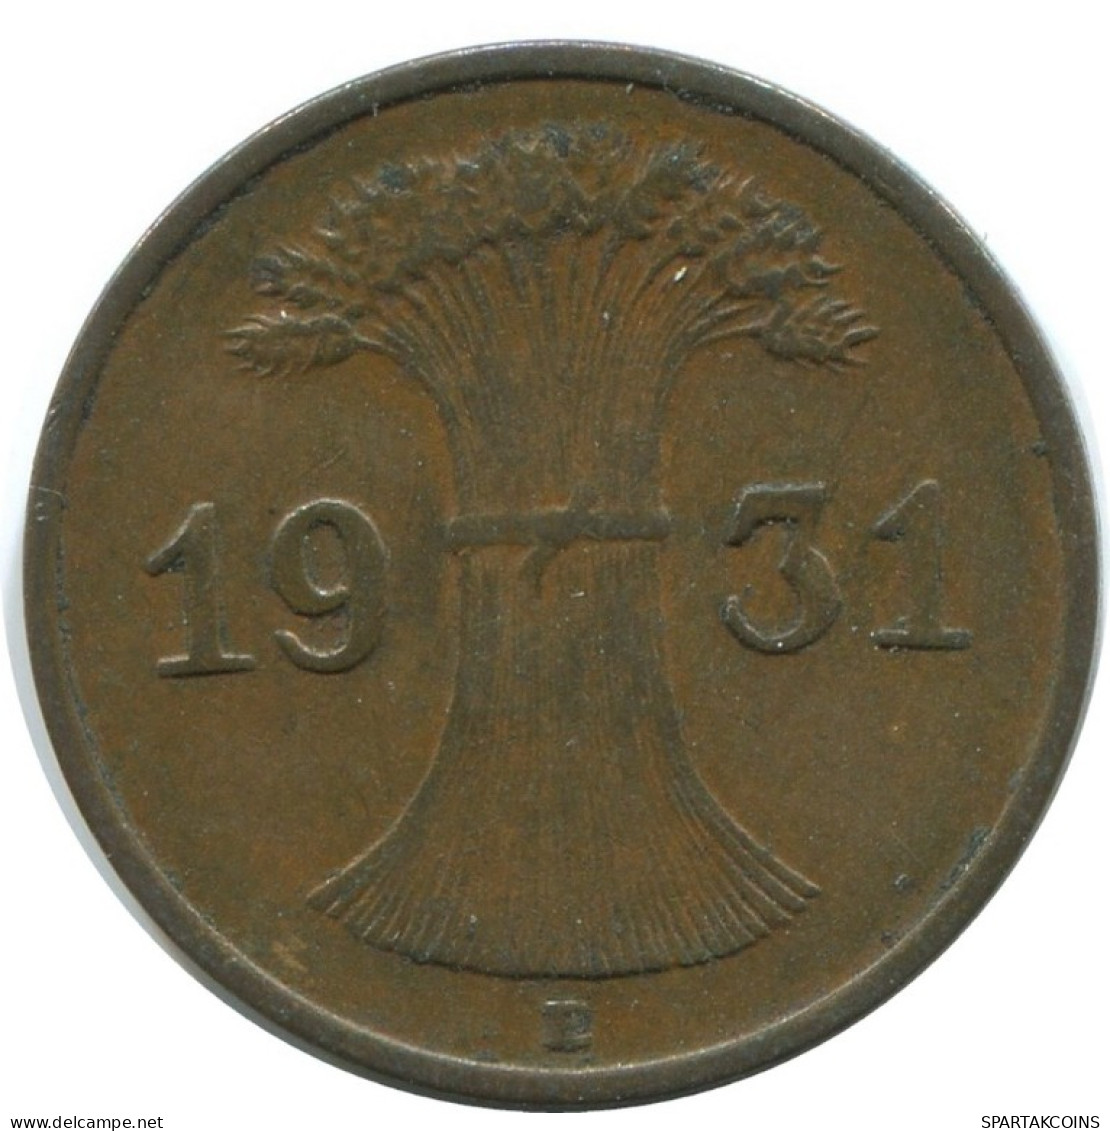 1 REICHSPFENNIG 1931 E DEUTSCHLAND Münze GERMANY #AE222.D.A - 1 Rentenpfennig & 1 Reichspfennig